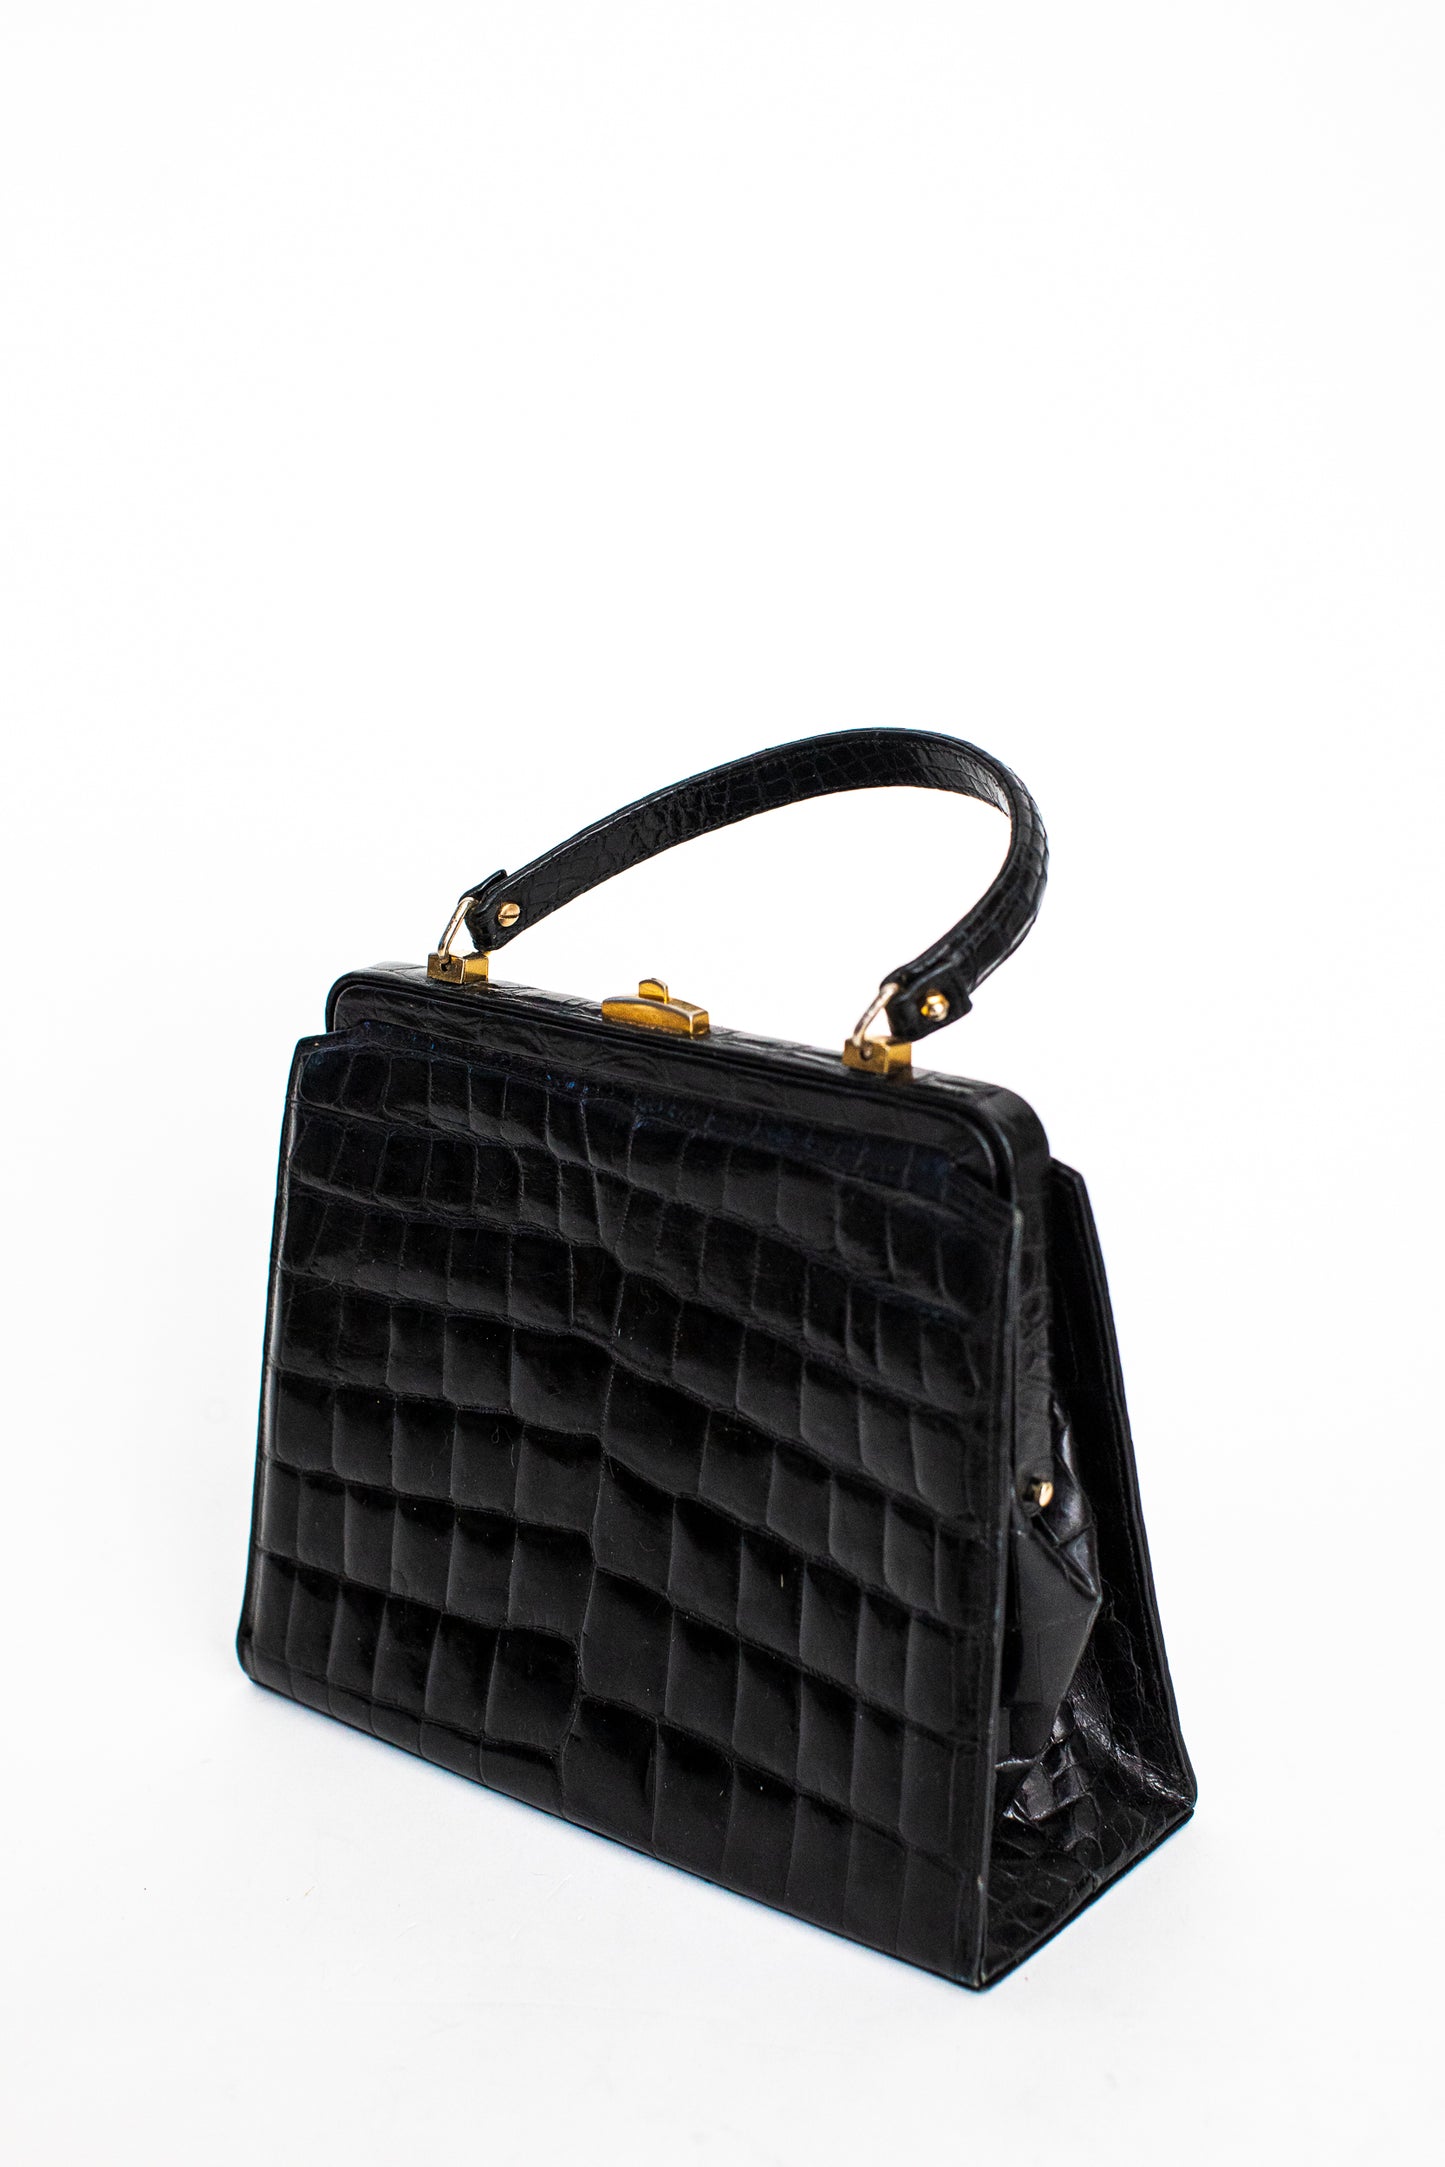 1970 Vintage Large Crocodile Leather Black Handbag